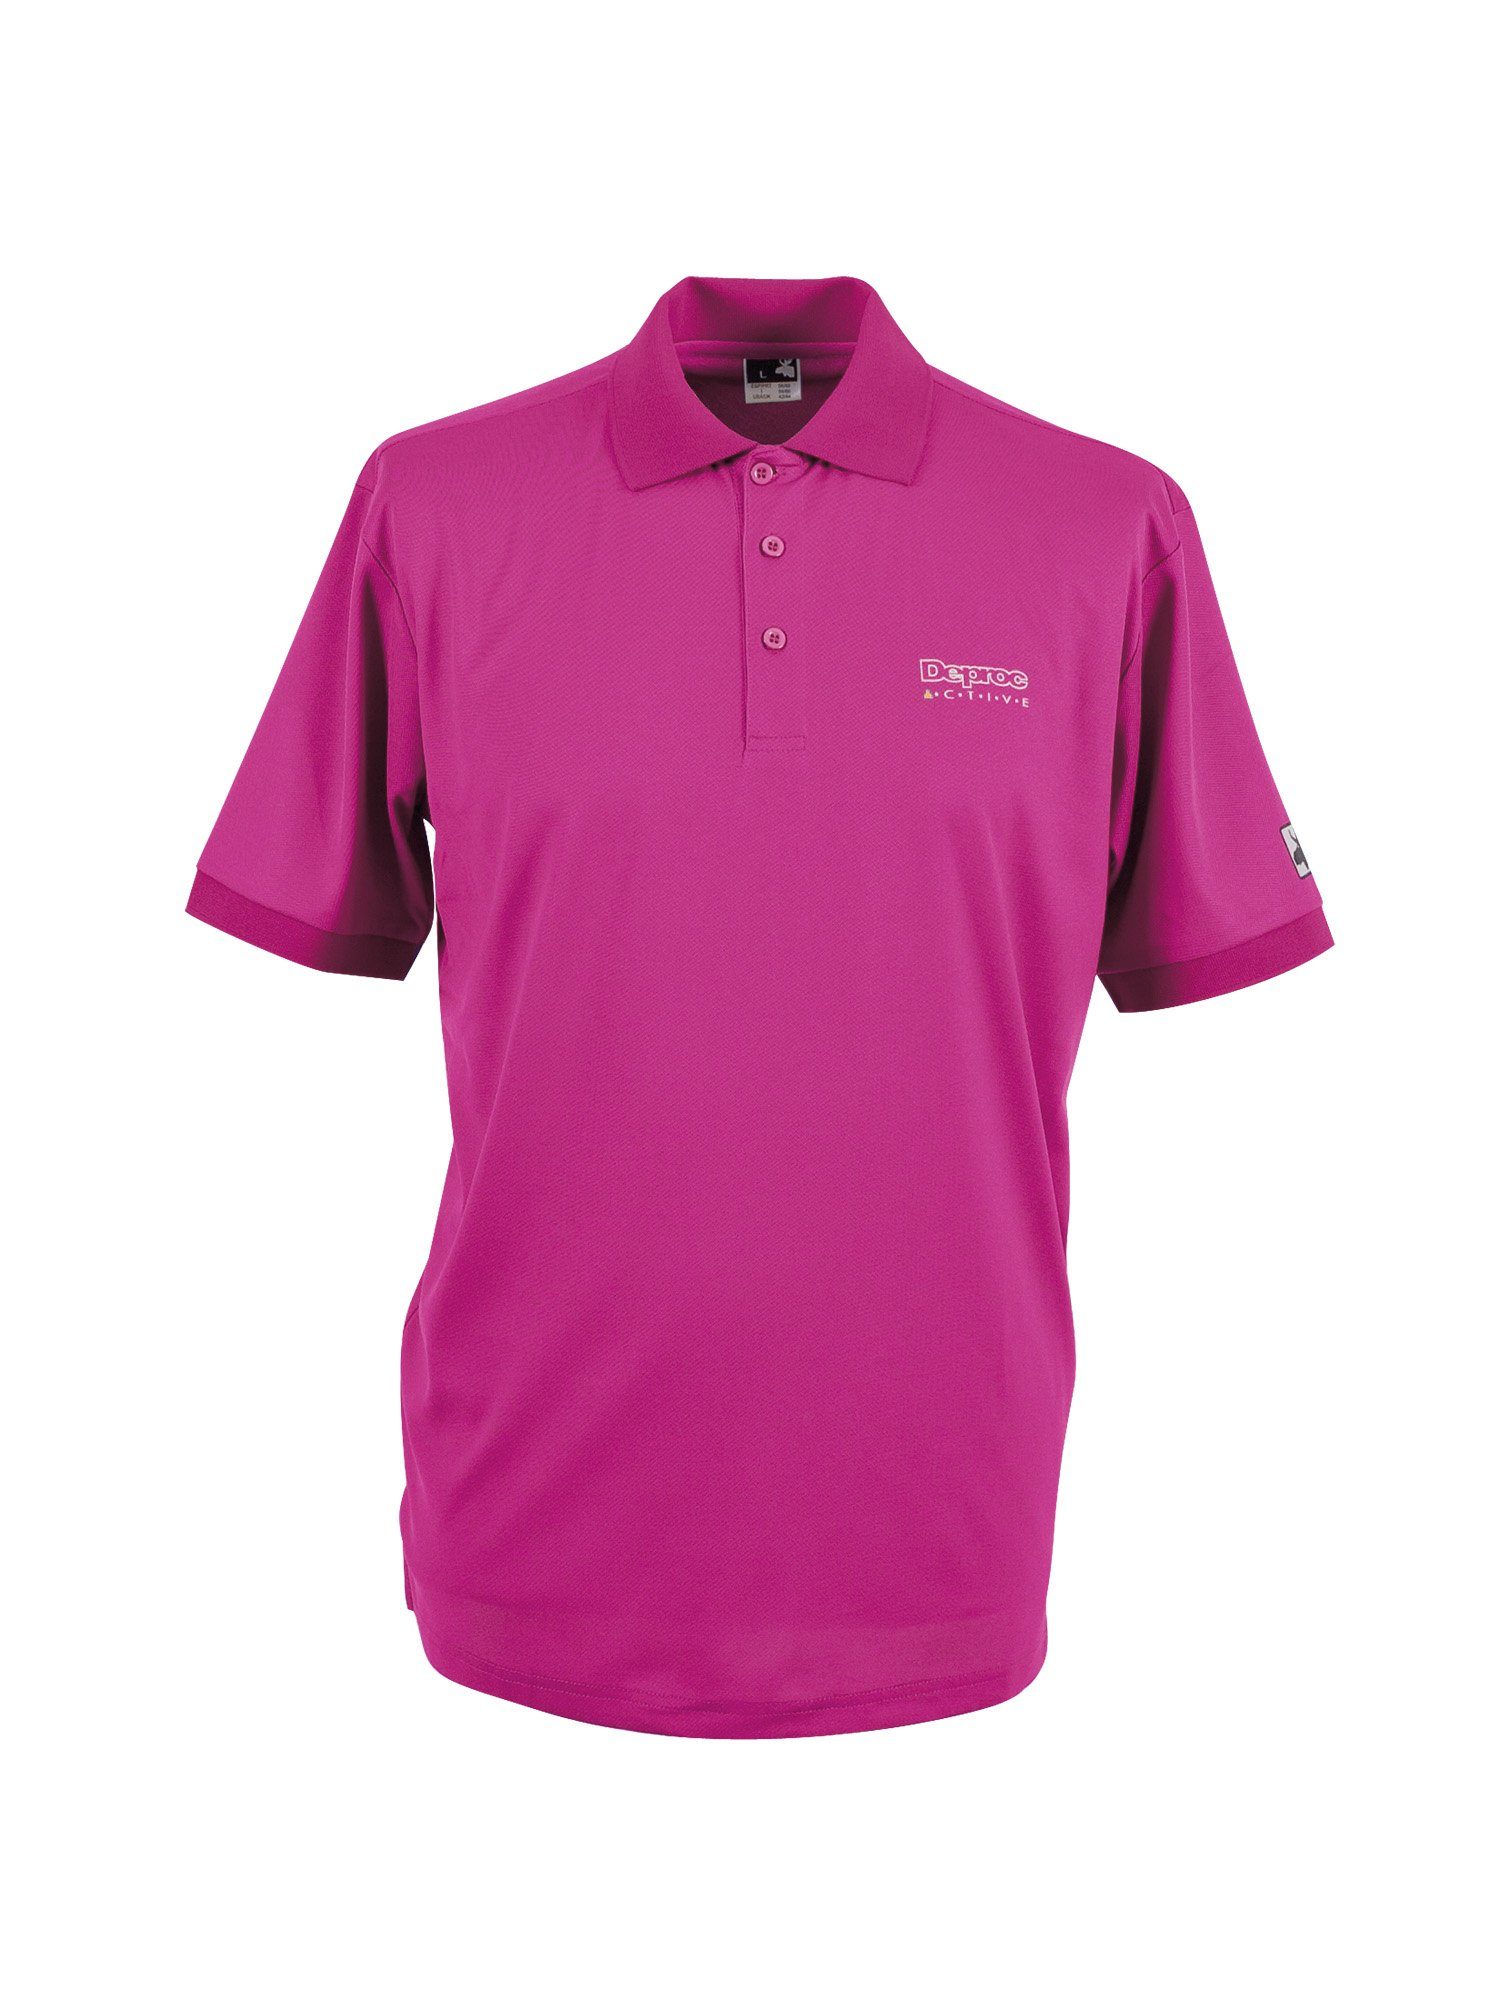 DEPROC Active Poloshirt HEDLEY V NEW CS WOMEN auch in Großen Größen erhältlich purple